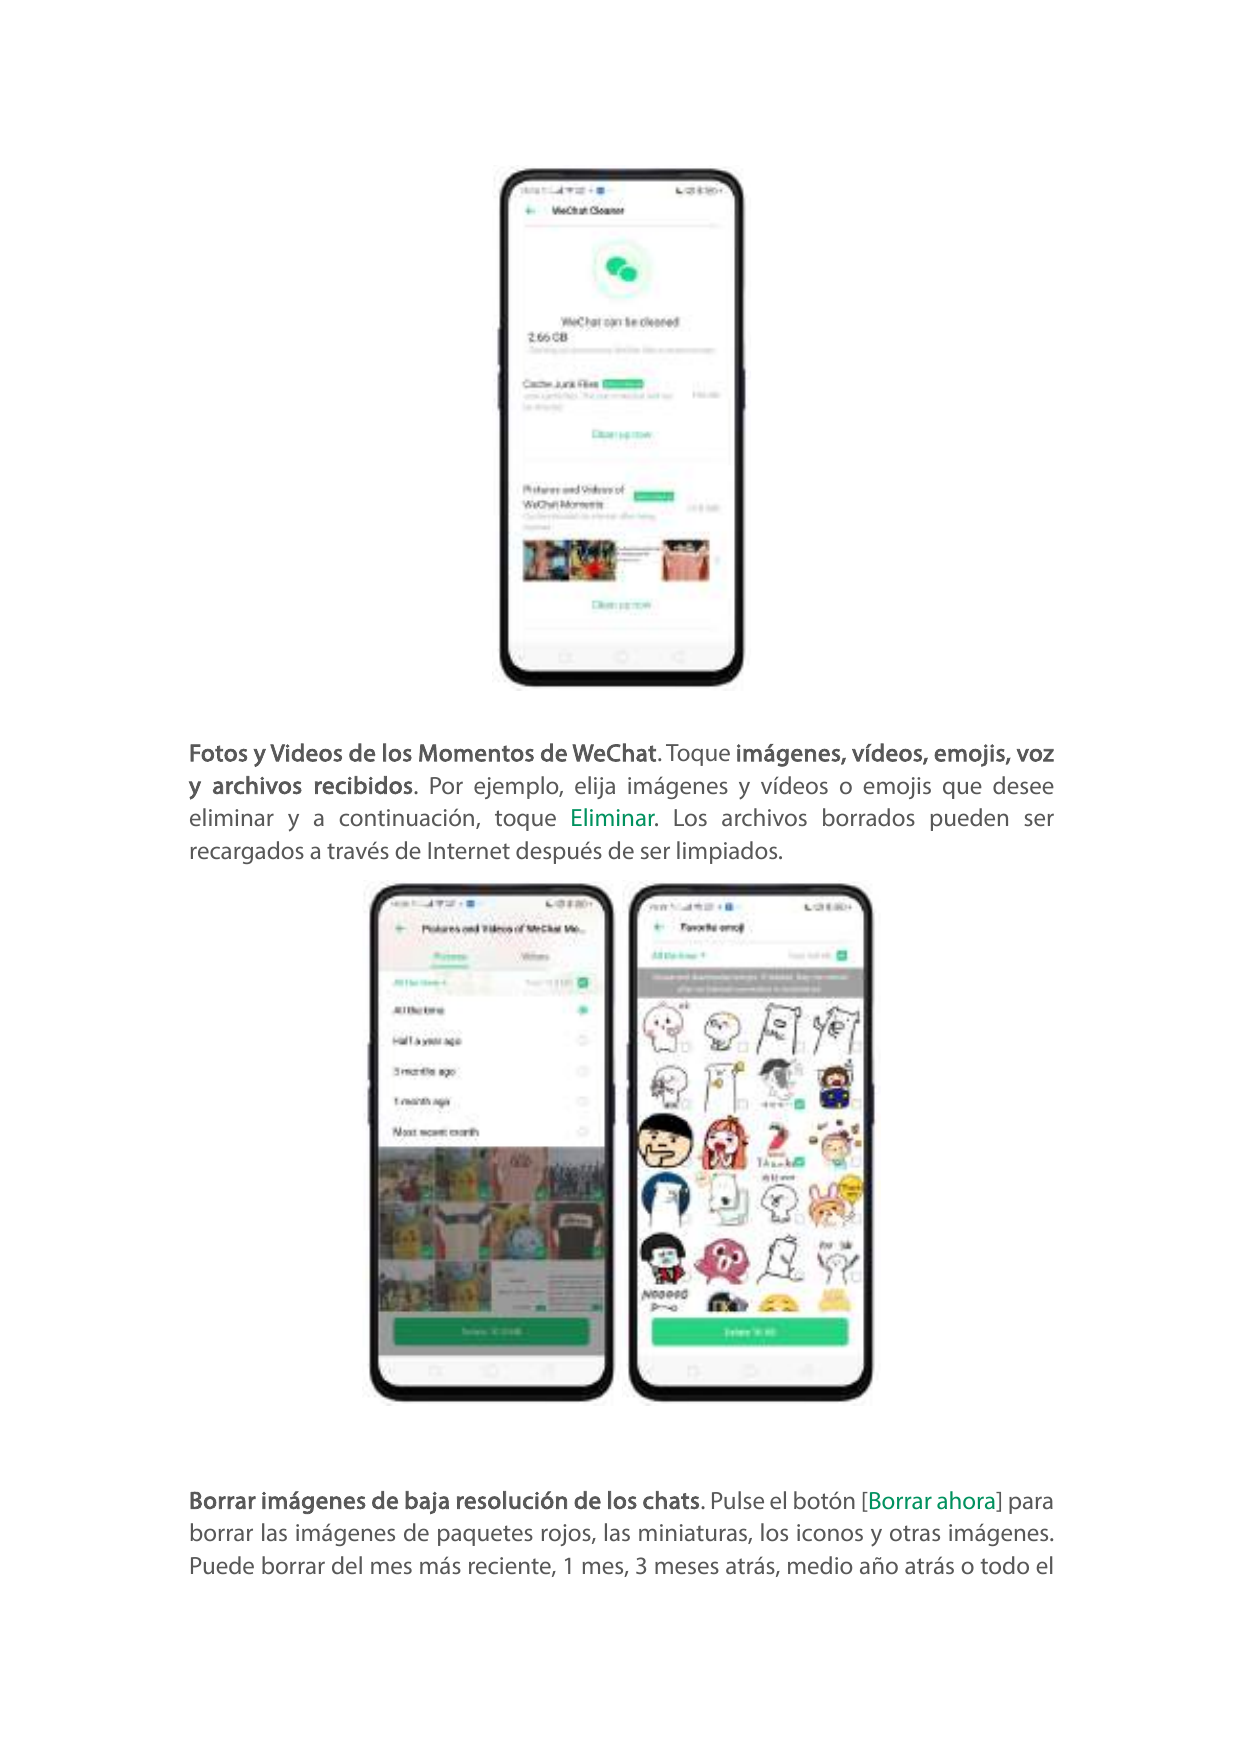 Fotos y Videos de los Momentos de WeChat. Toque imágenes, vídeos, emojis, vozy archivos recibidos. Por ejemplo, elija imágenes y